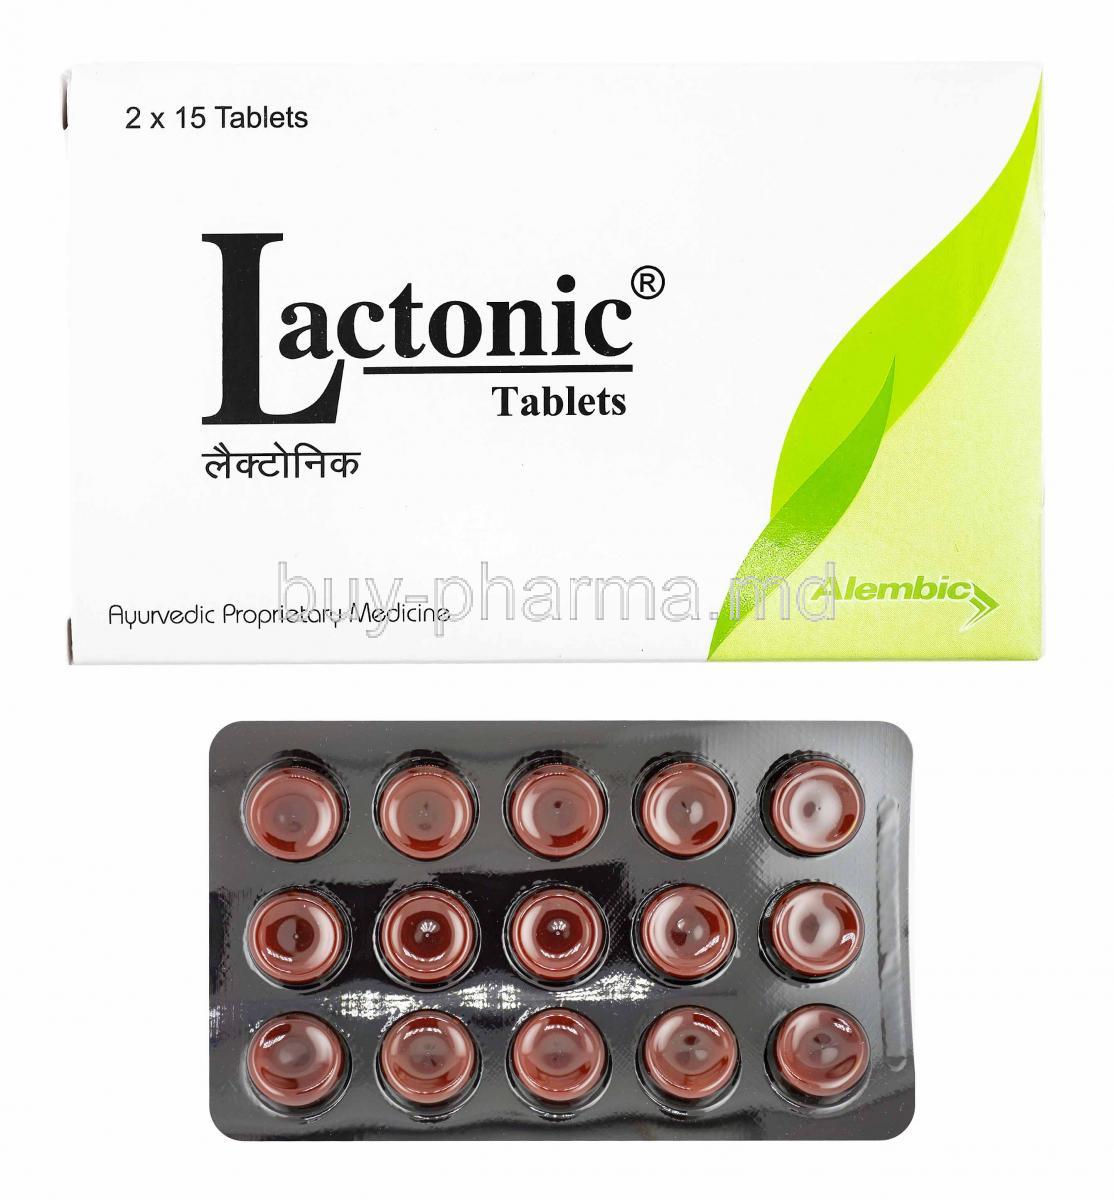 Lactonic, Shatavari, Ashwagandha, Methi, Yashtimadhu and Lasuna box and tablets